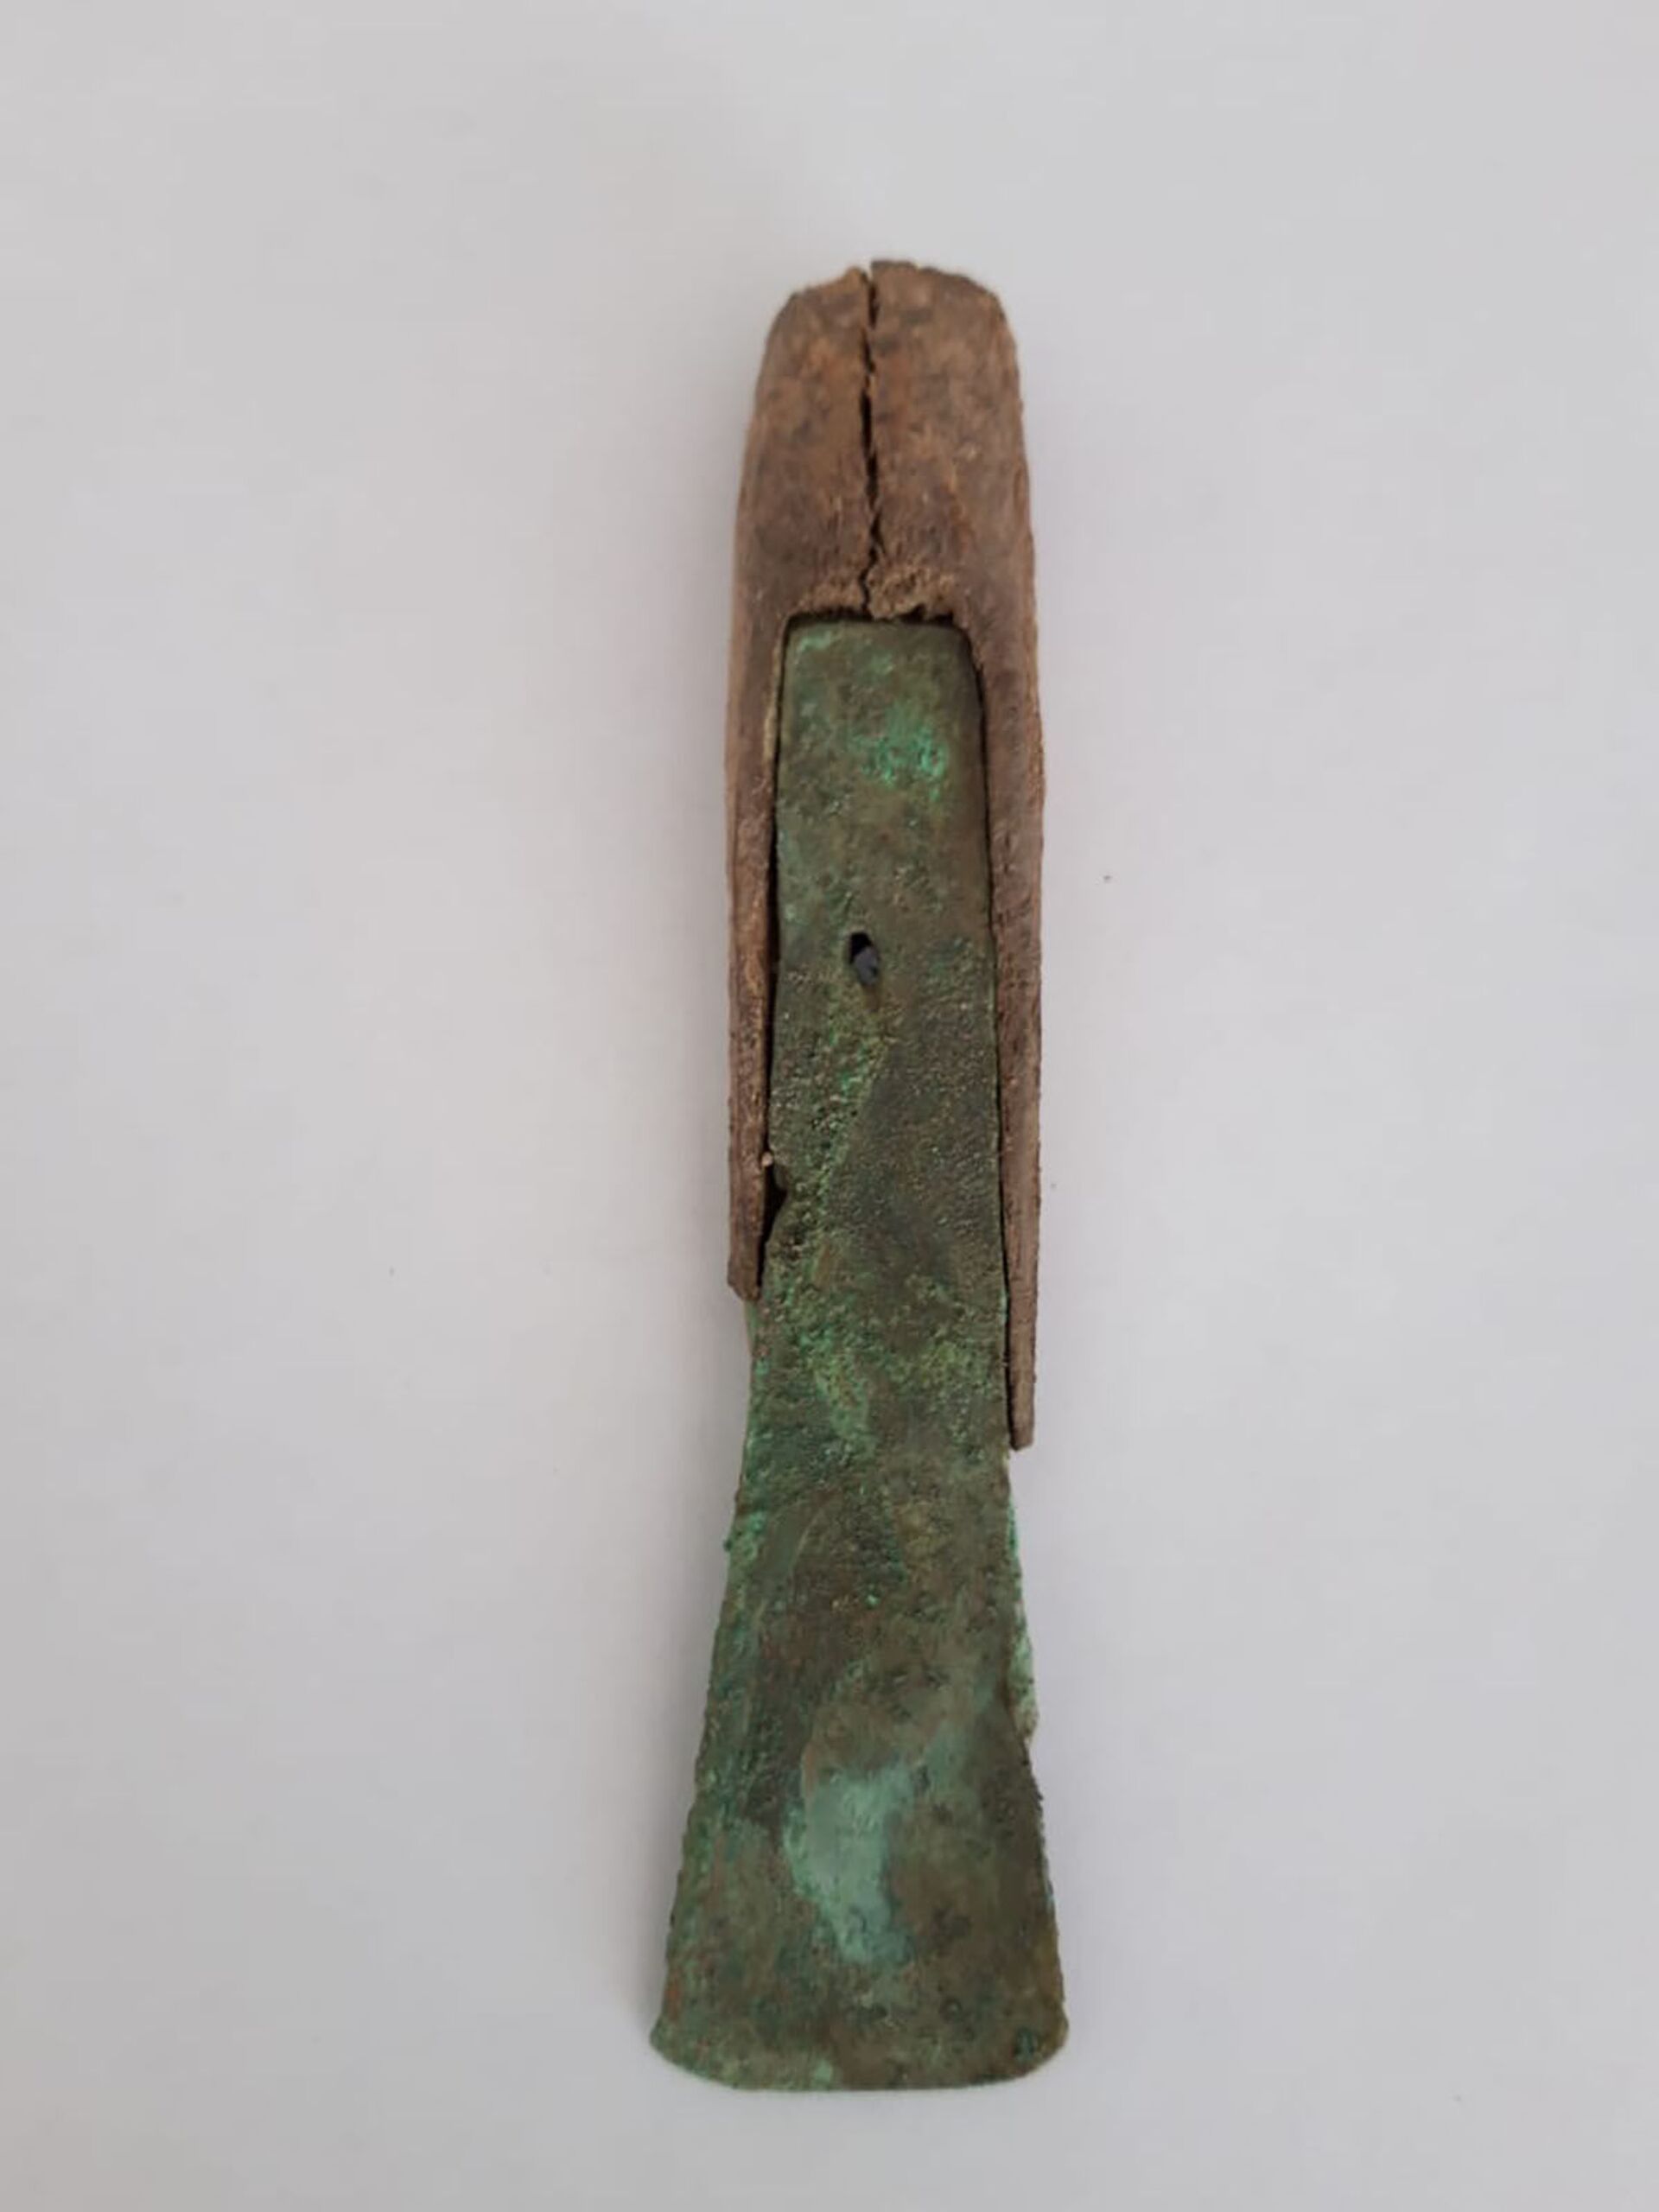 Faca de cabo e cinzel com punho de osso da Idade do Bronze são descobertos no Cazaquistão (FOTOS)  - Sputnik Brasil, 1920, 01.08.2021